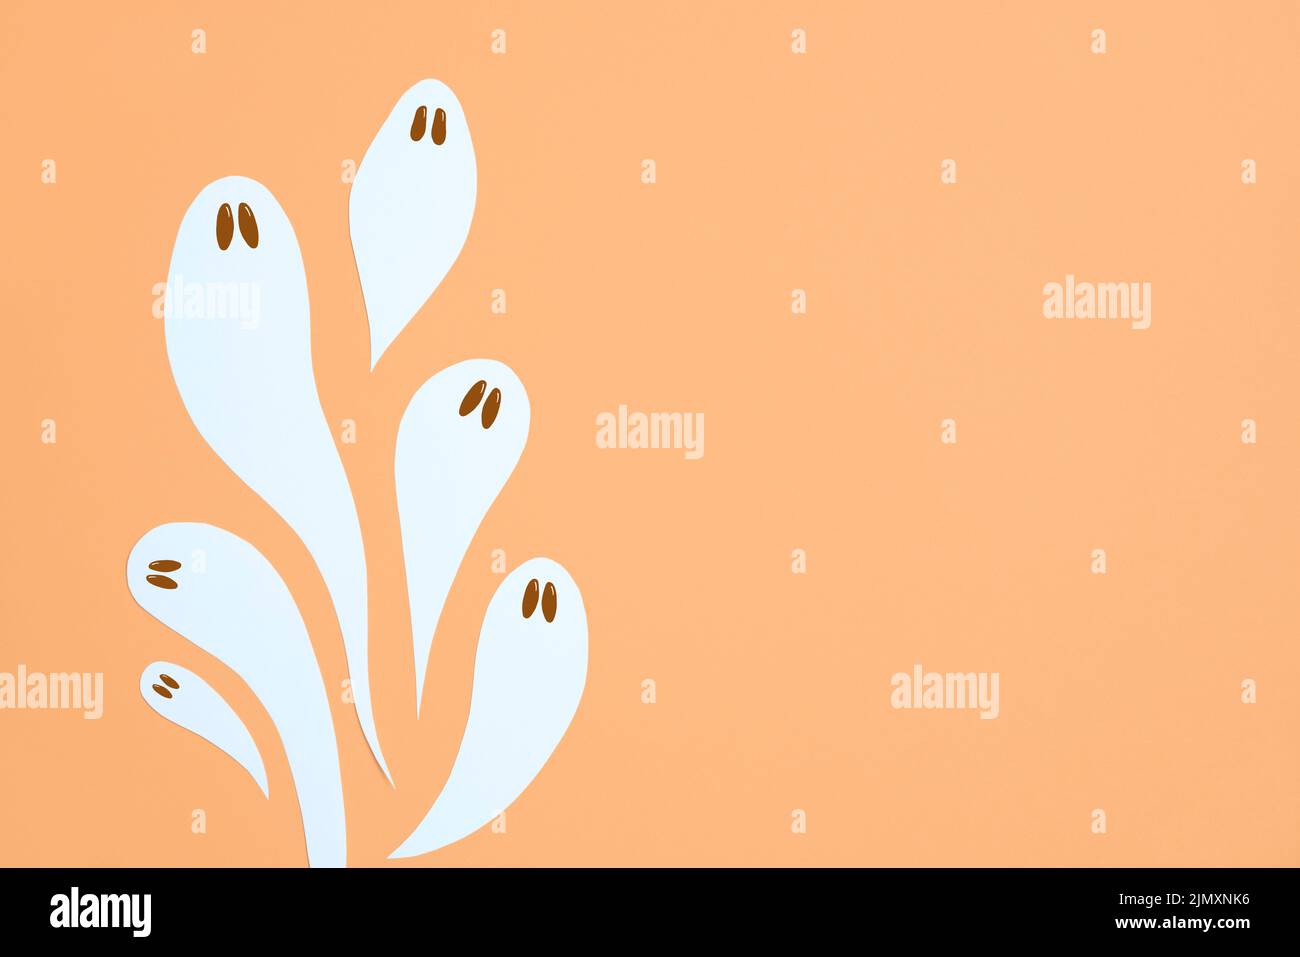 Halloween design, gruppo di simpatici fantasmi bianchi che volano su sfondo color arancio pastello, composizione trendy con spazio copia. Foto Stock